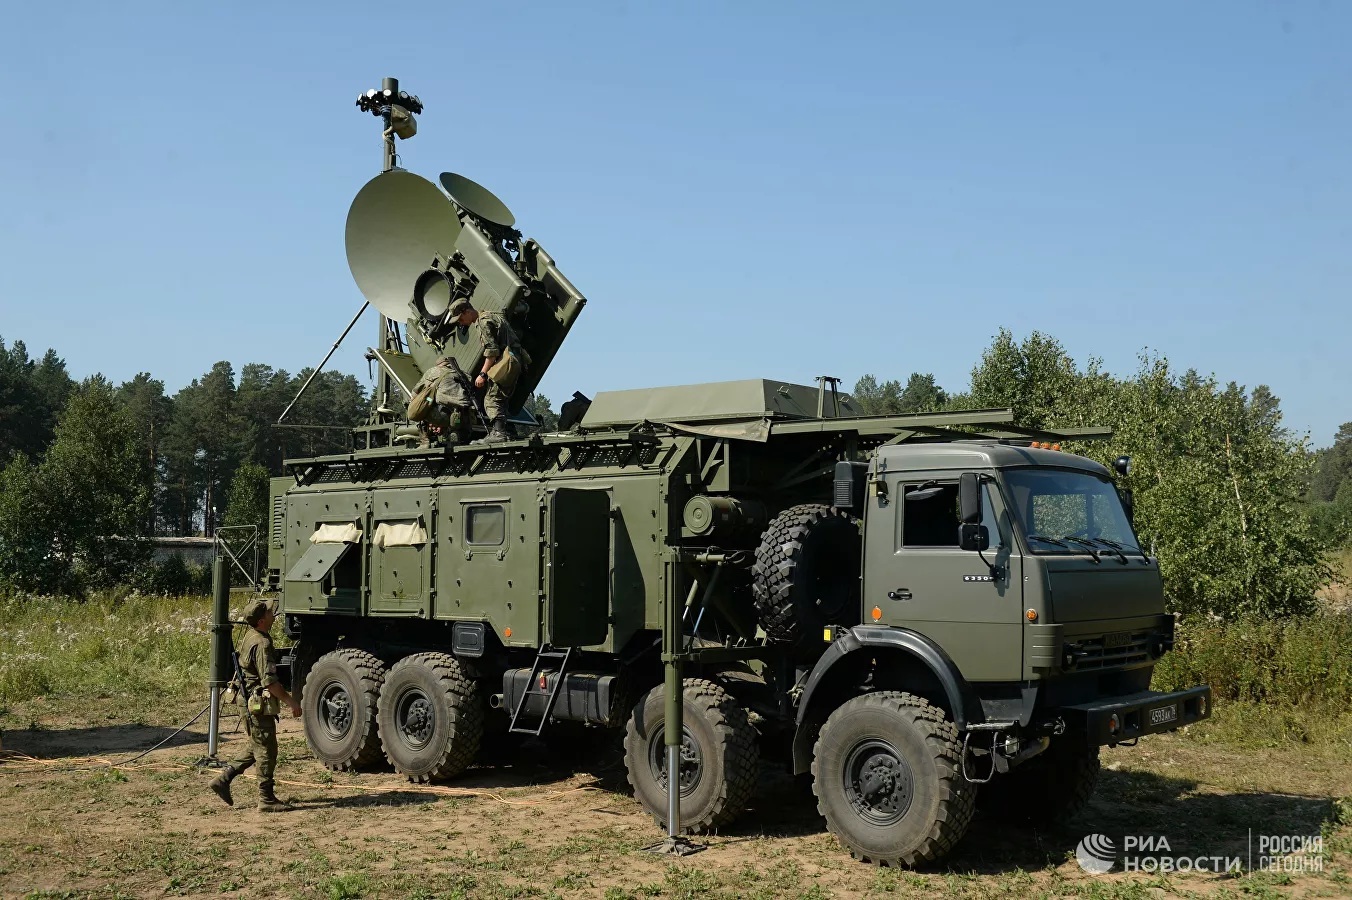 Nga sẵn sàng triển khai các hệ thống tác chiến điện tử để ‘răn đe’ NATO